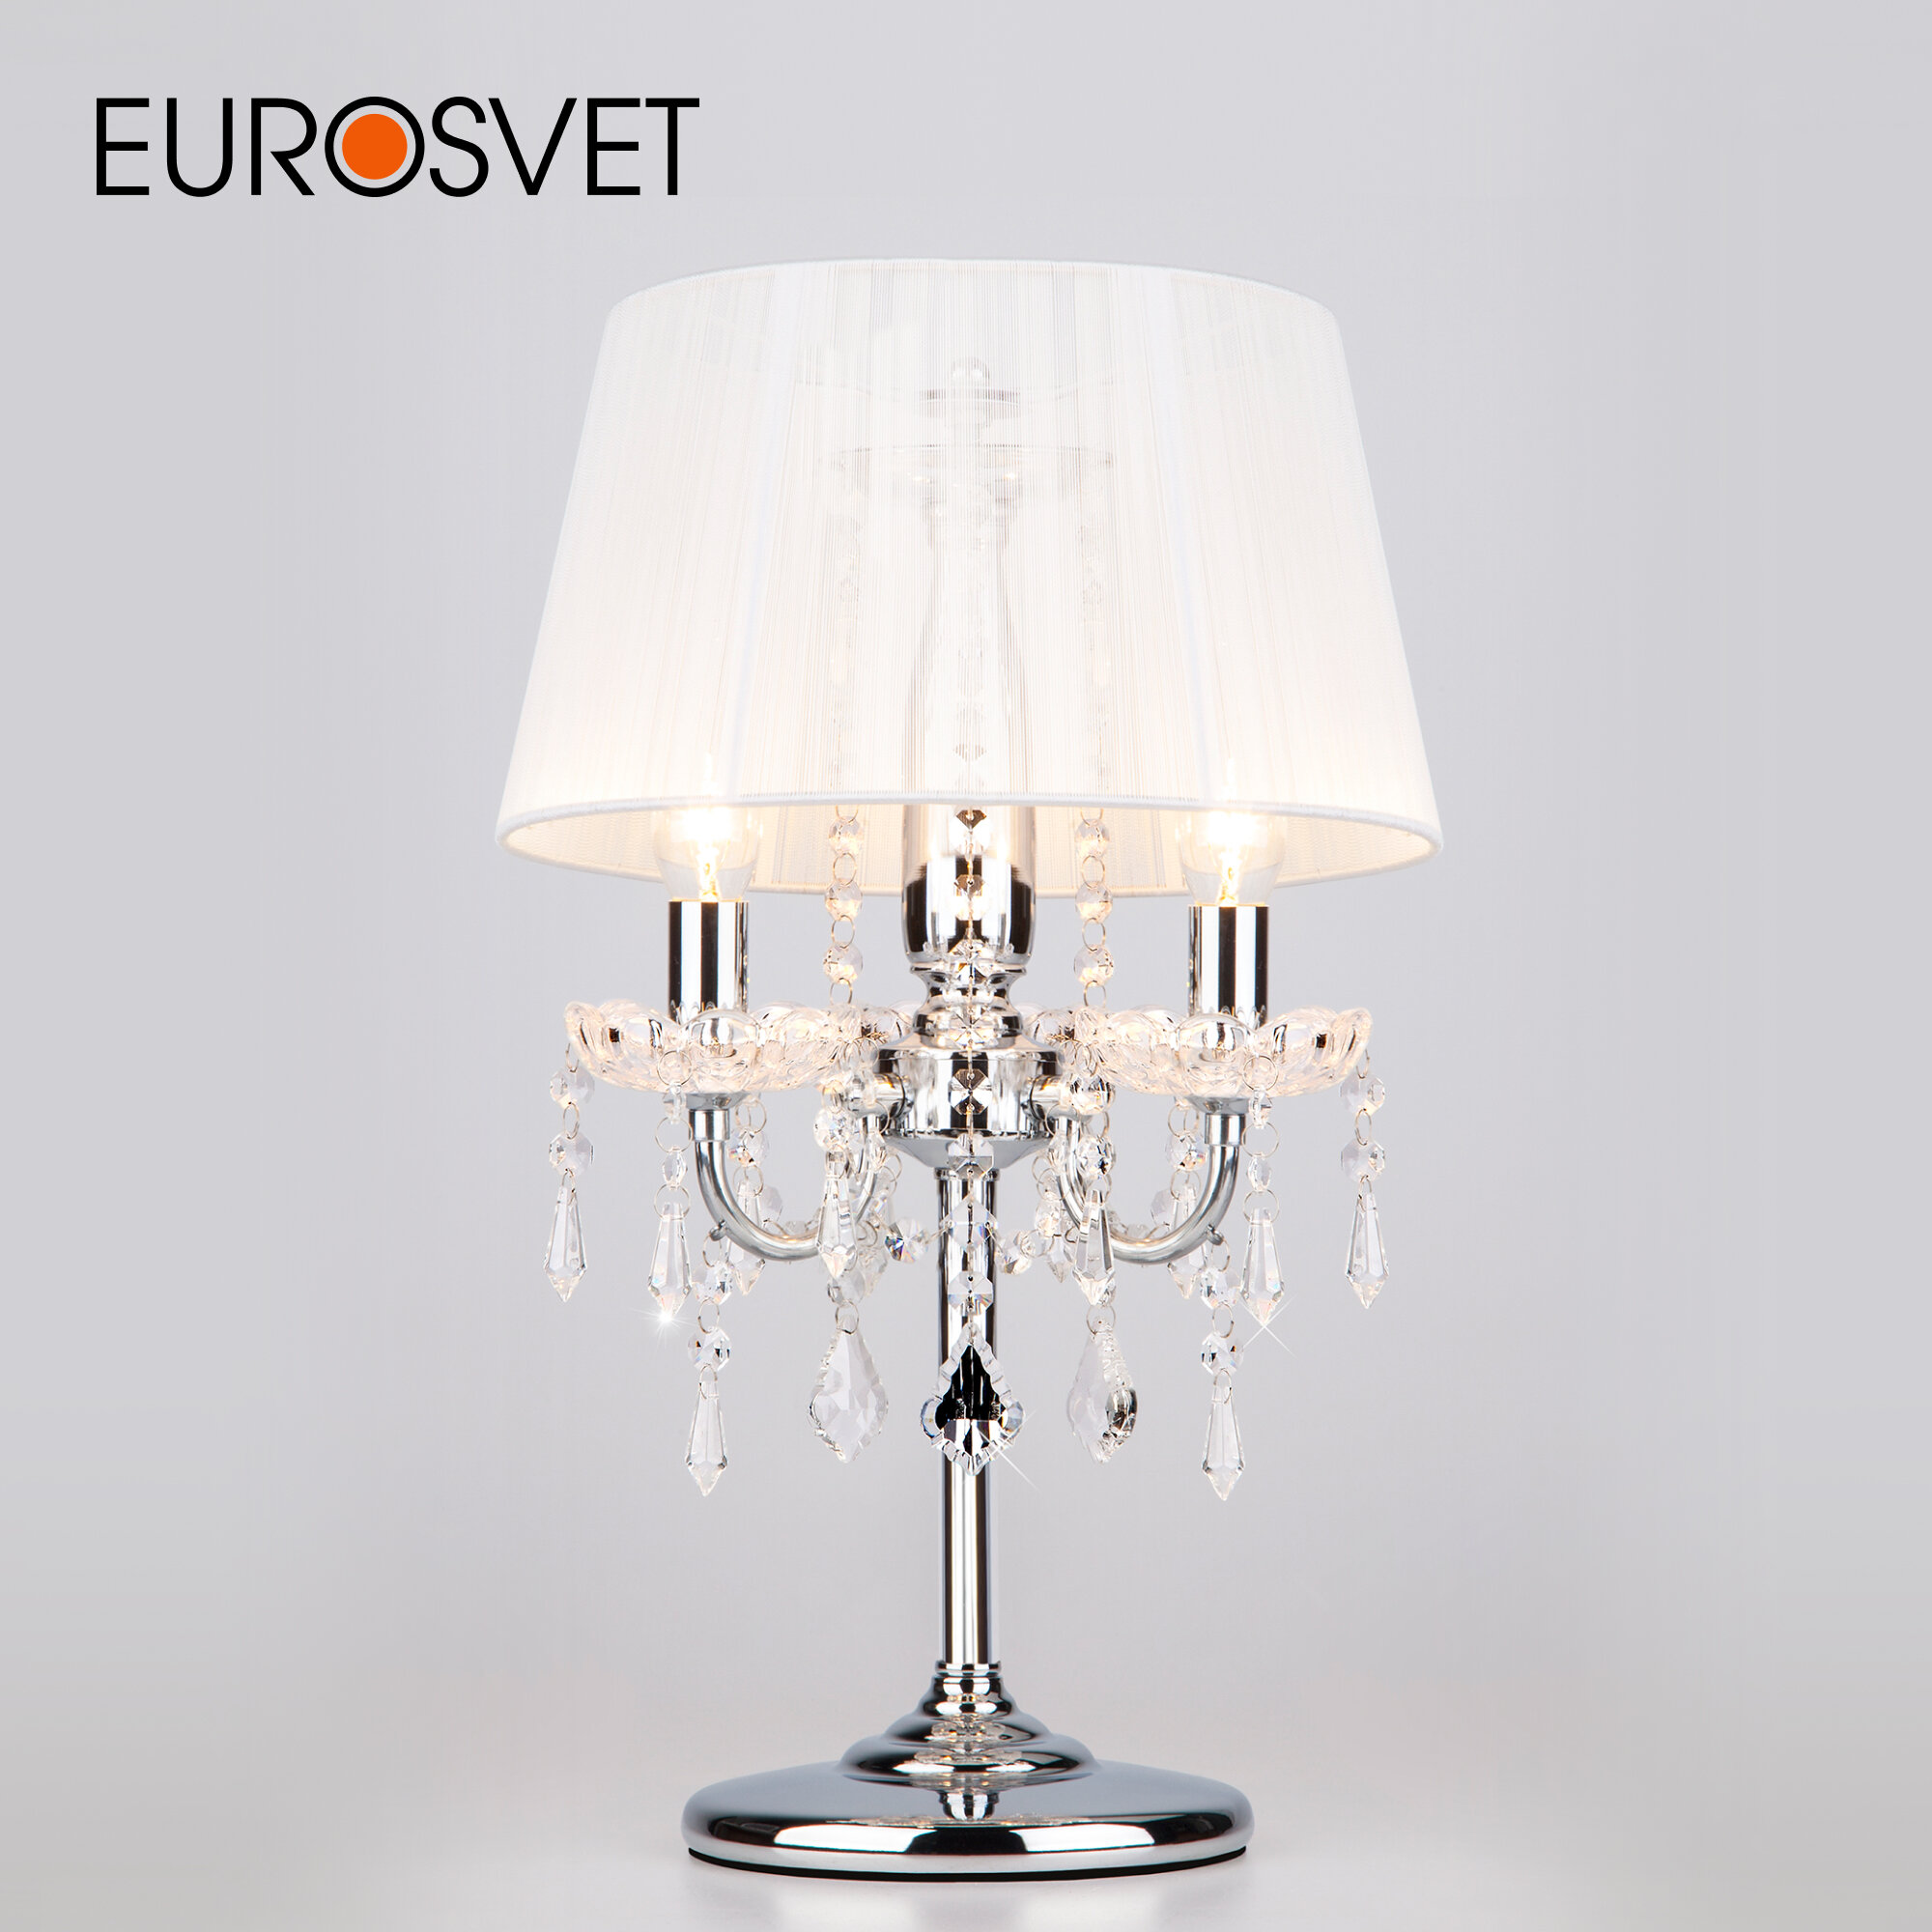 Лампа декоративная Eurosvet Allata 2045/3T хром/белый, E14, 120 Вт, белый